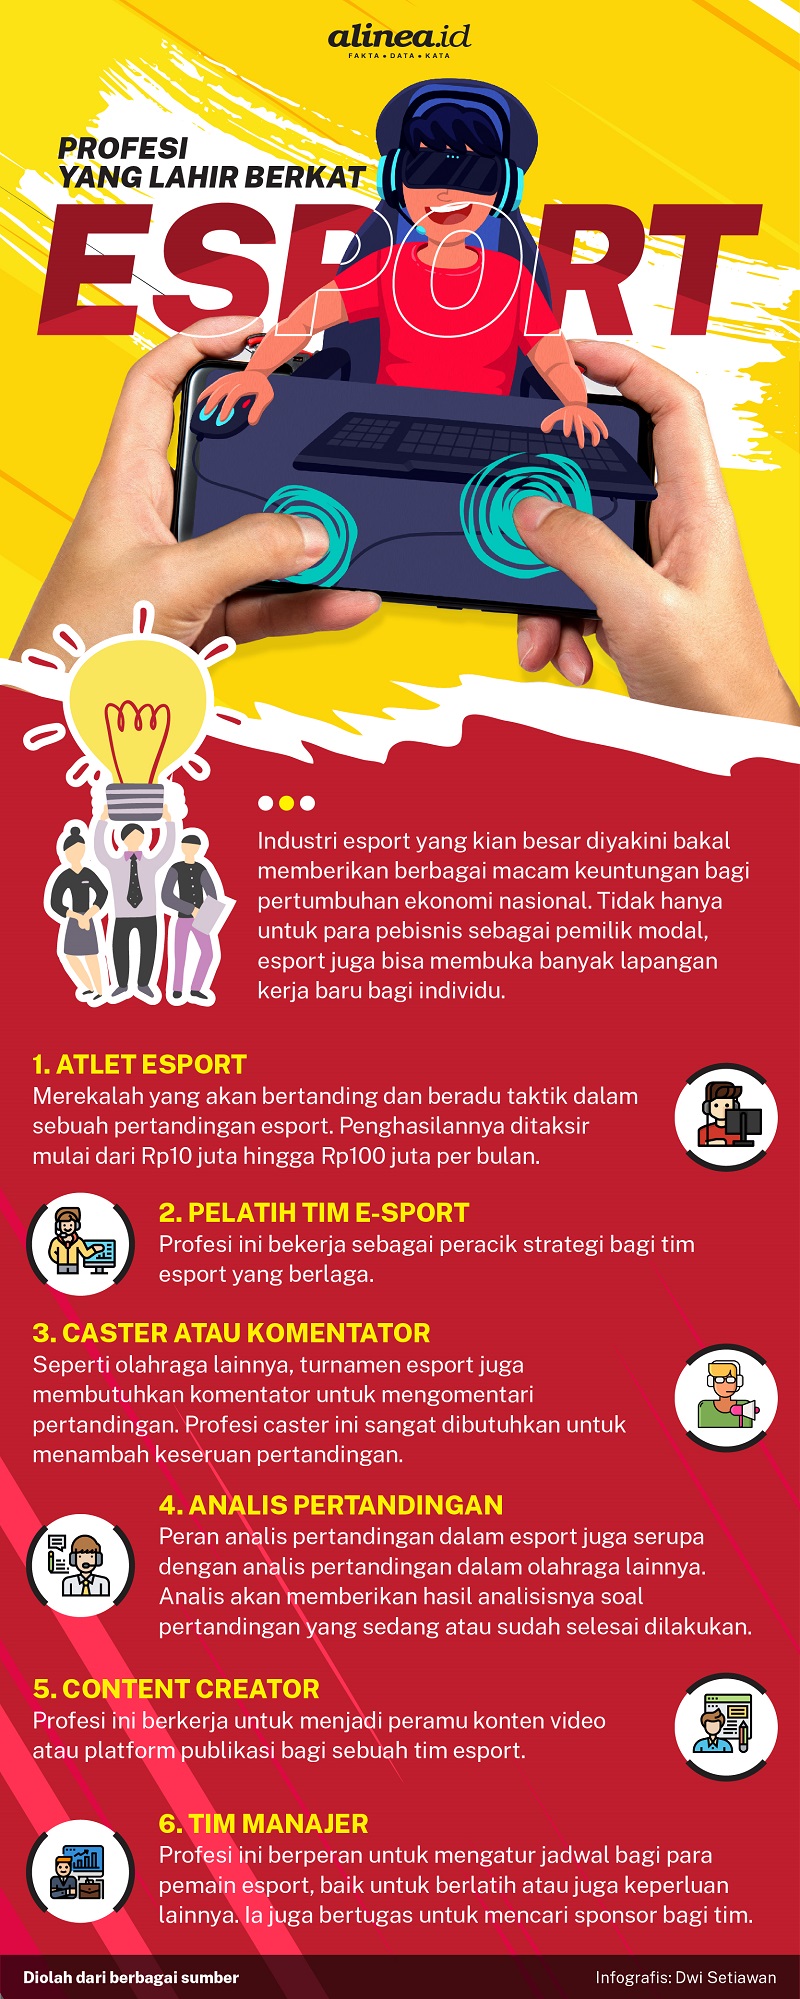 Infografik profesi yang lahir dari e-sport. Alinea.id/Dwi Setiawan